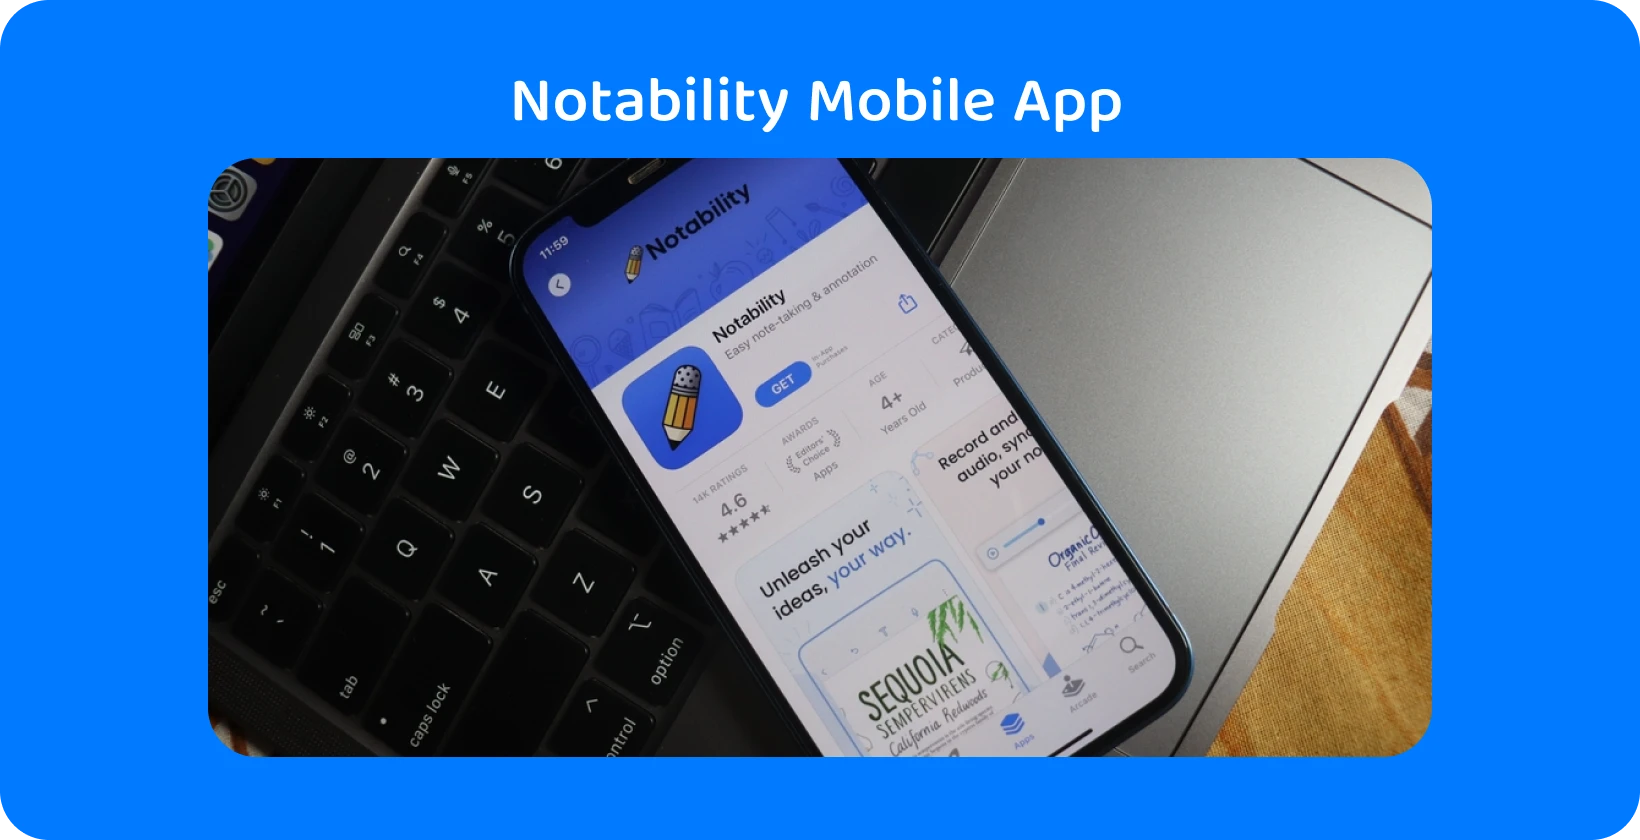 Notability alkalmazás az okostelefon képernyőjén átírási funkcióval, amely bemutatja az audio-szöveg képességeket.